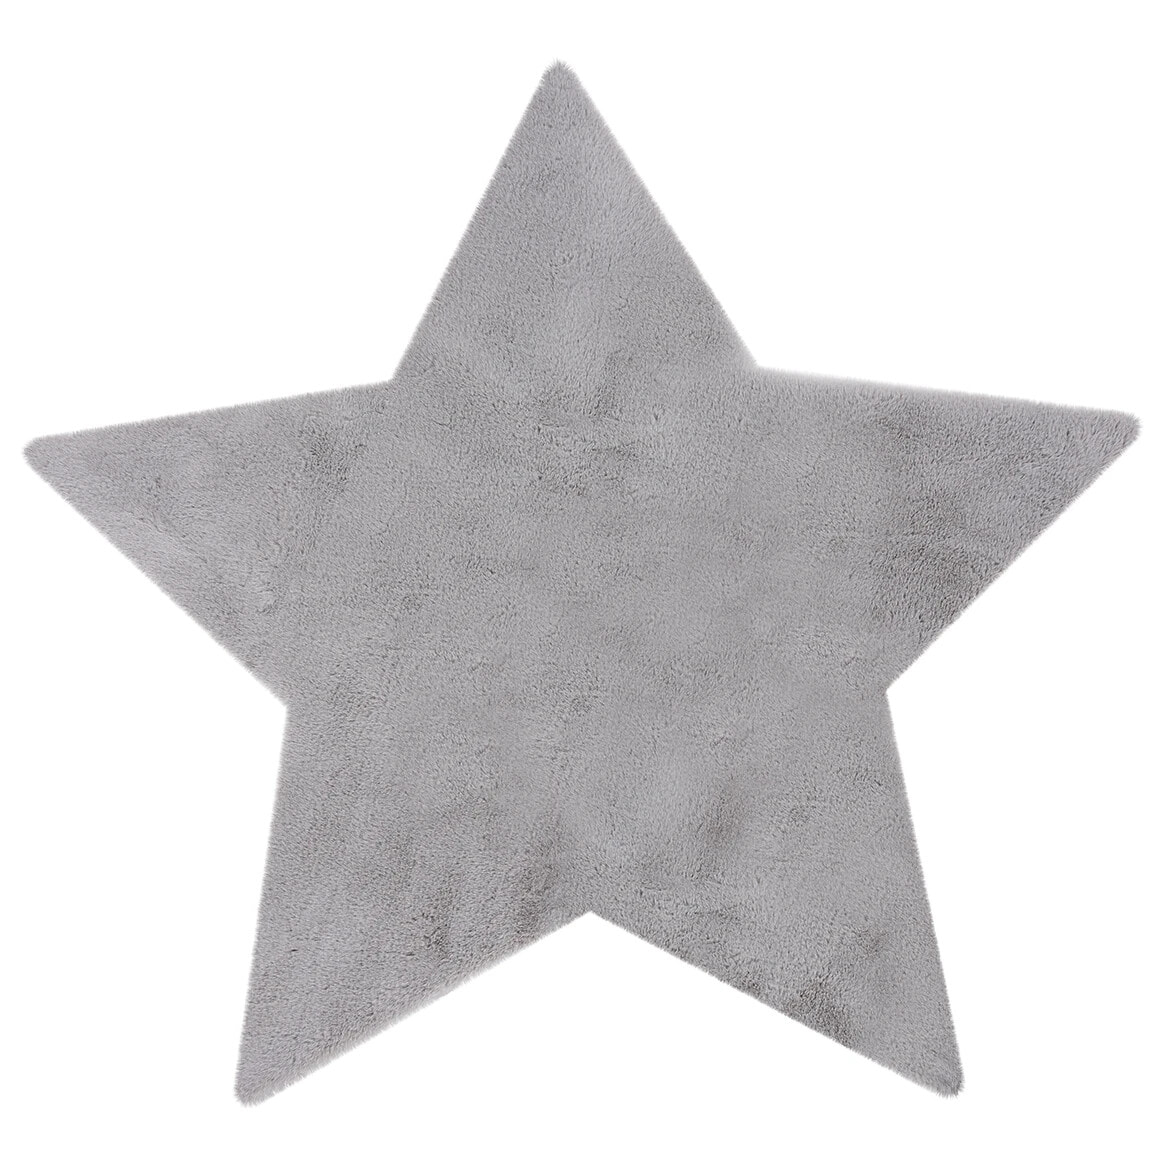 Детский ковер Obsession в виде звезды, серый цвет, Ширина 86 cm